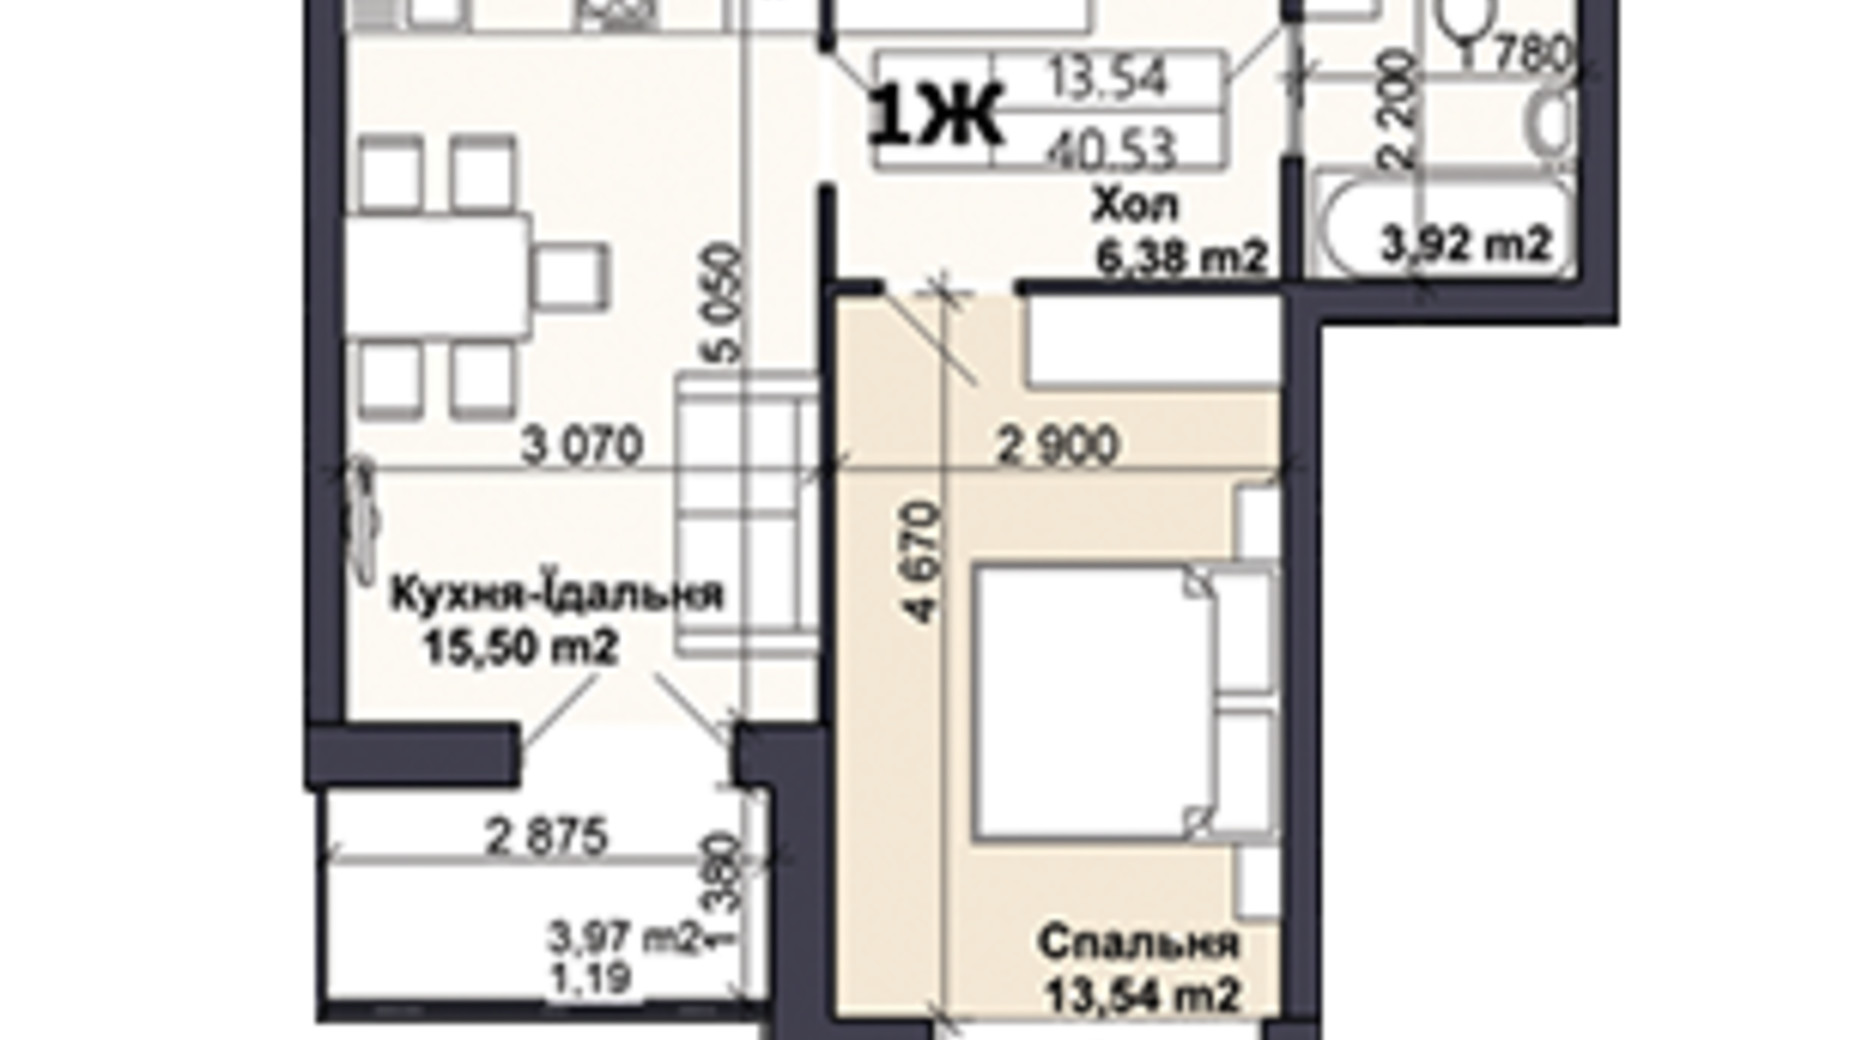 Планування 1-кімнатної квартири в ЖК Саме той 40.53 м², фото 585413